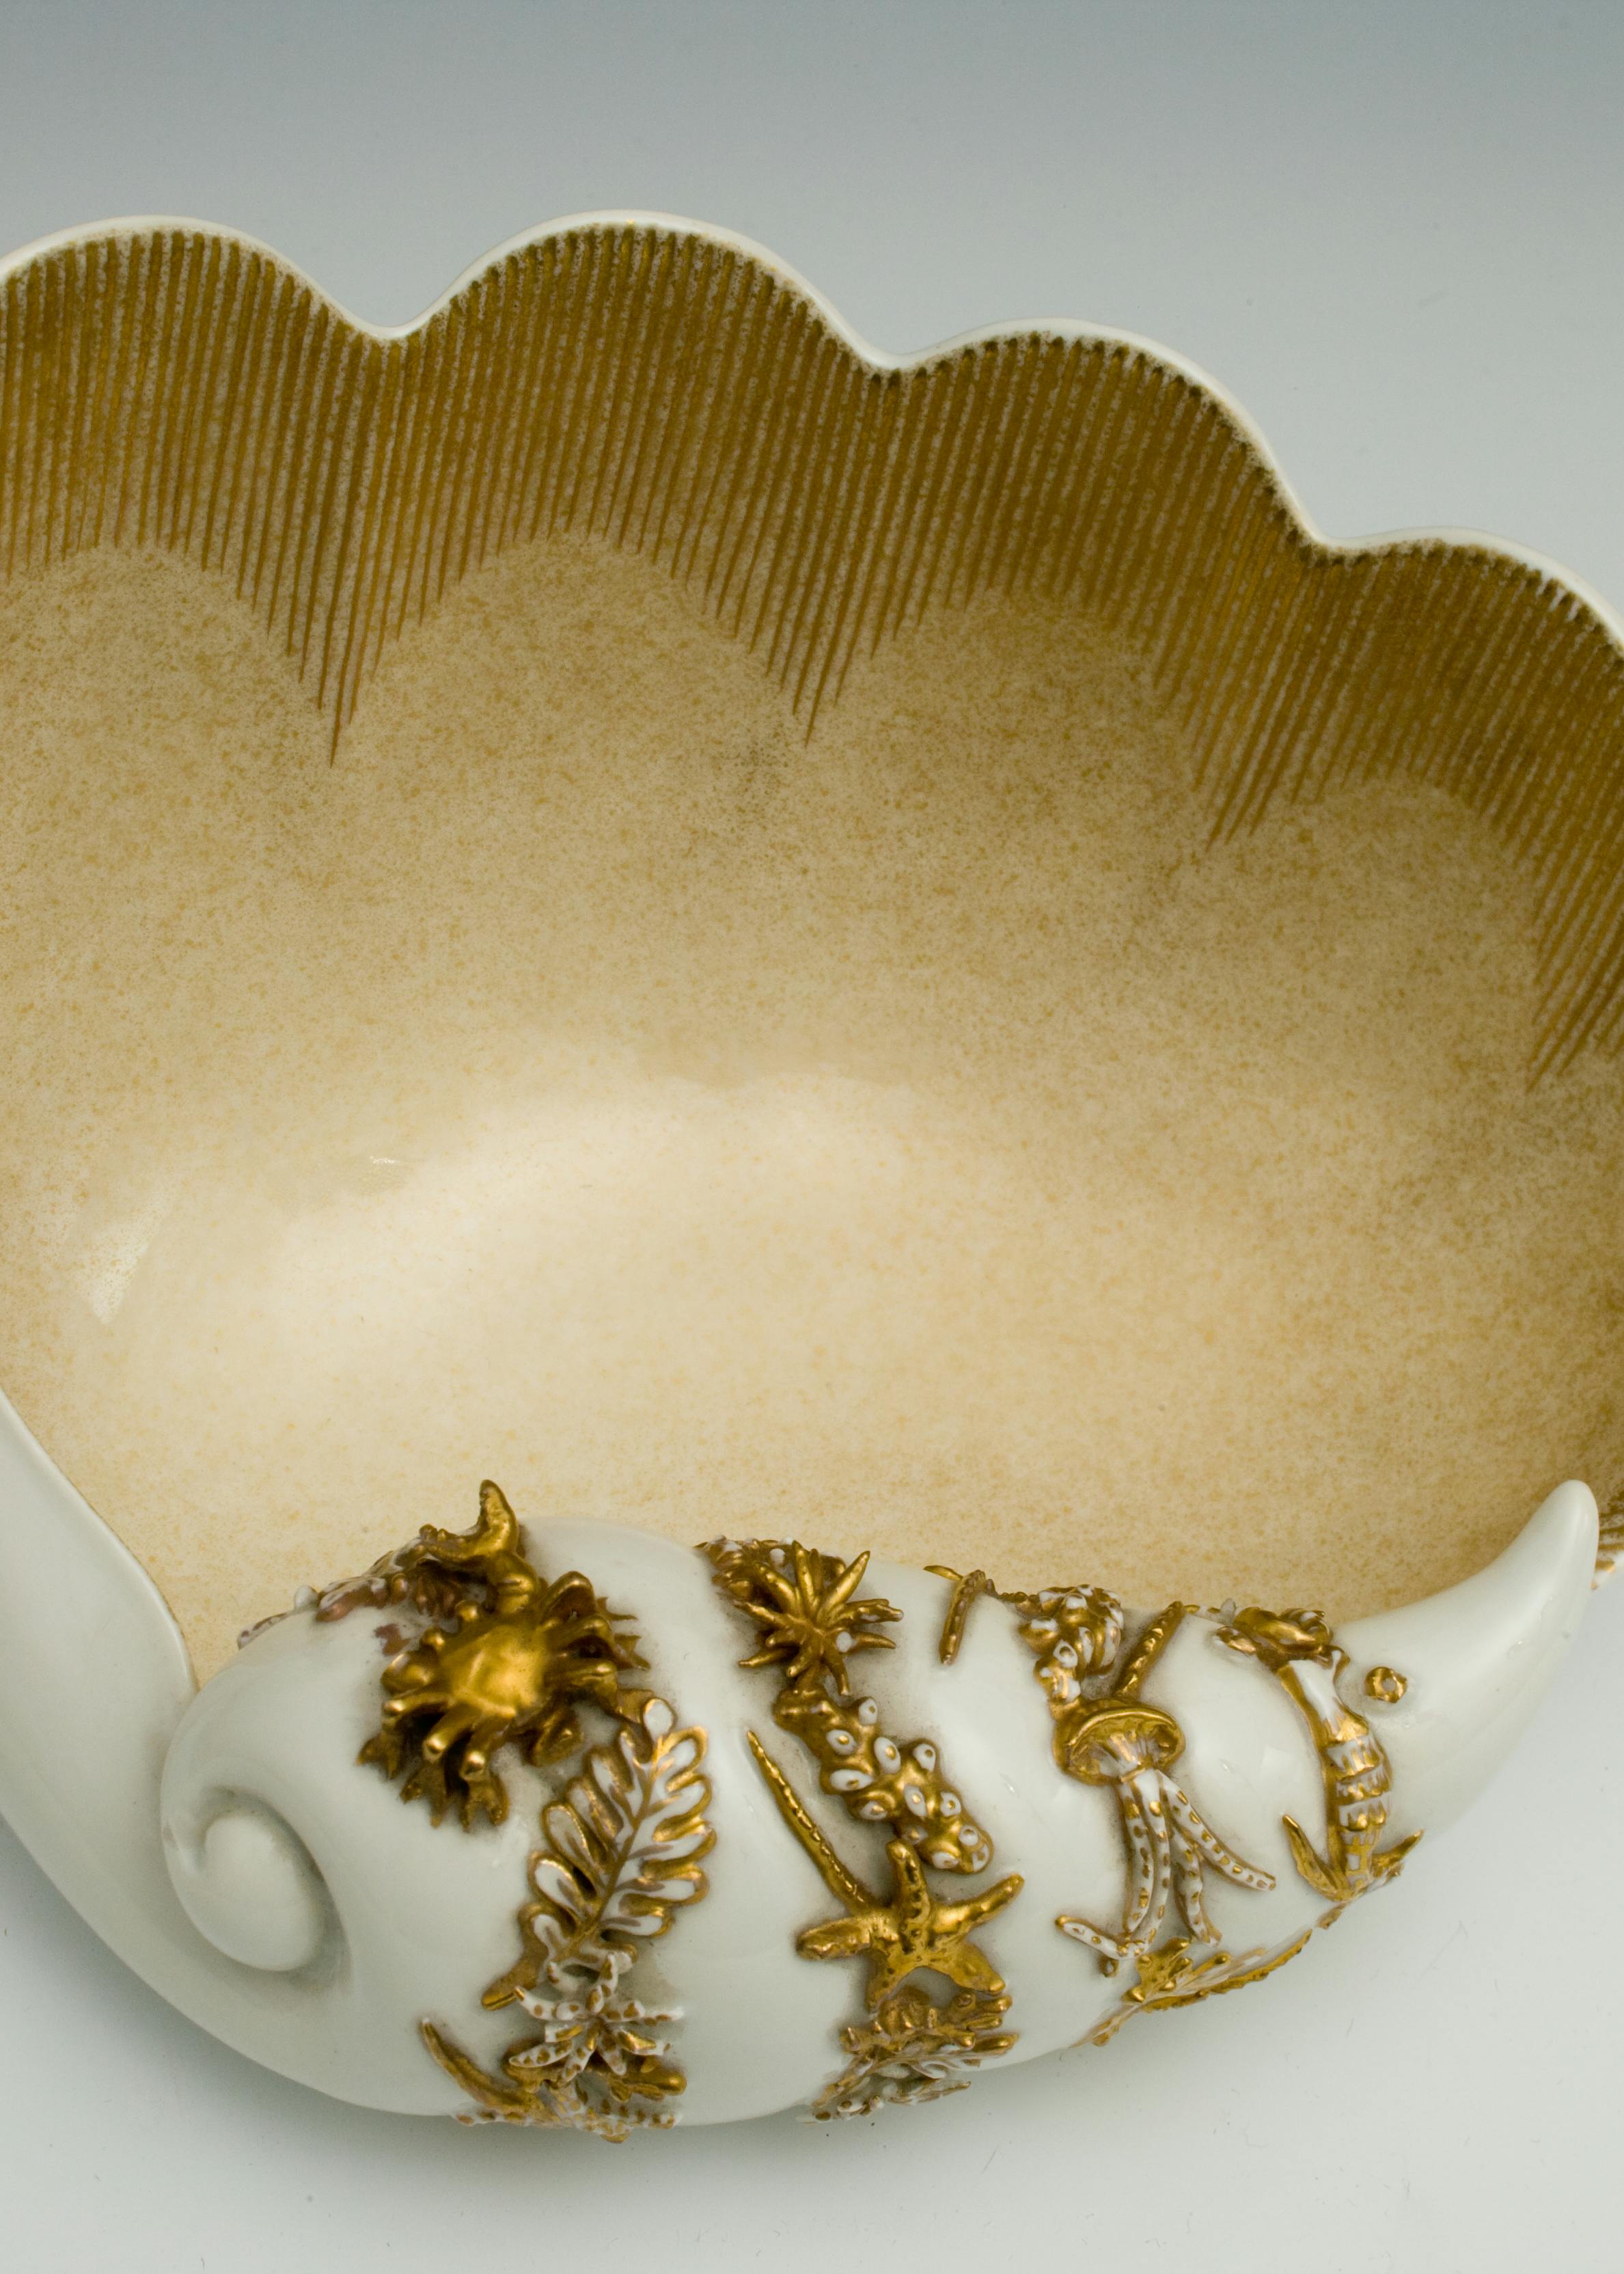 Vaso a forma di conchiglia ornato a rilievo con soggetti marini tra cui un granchio